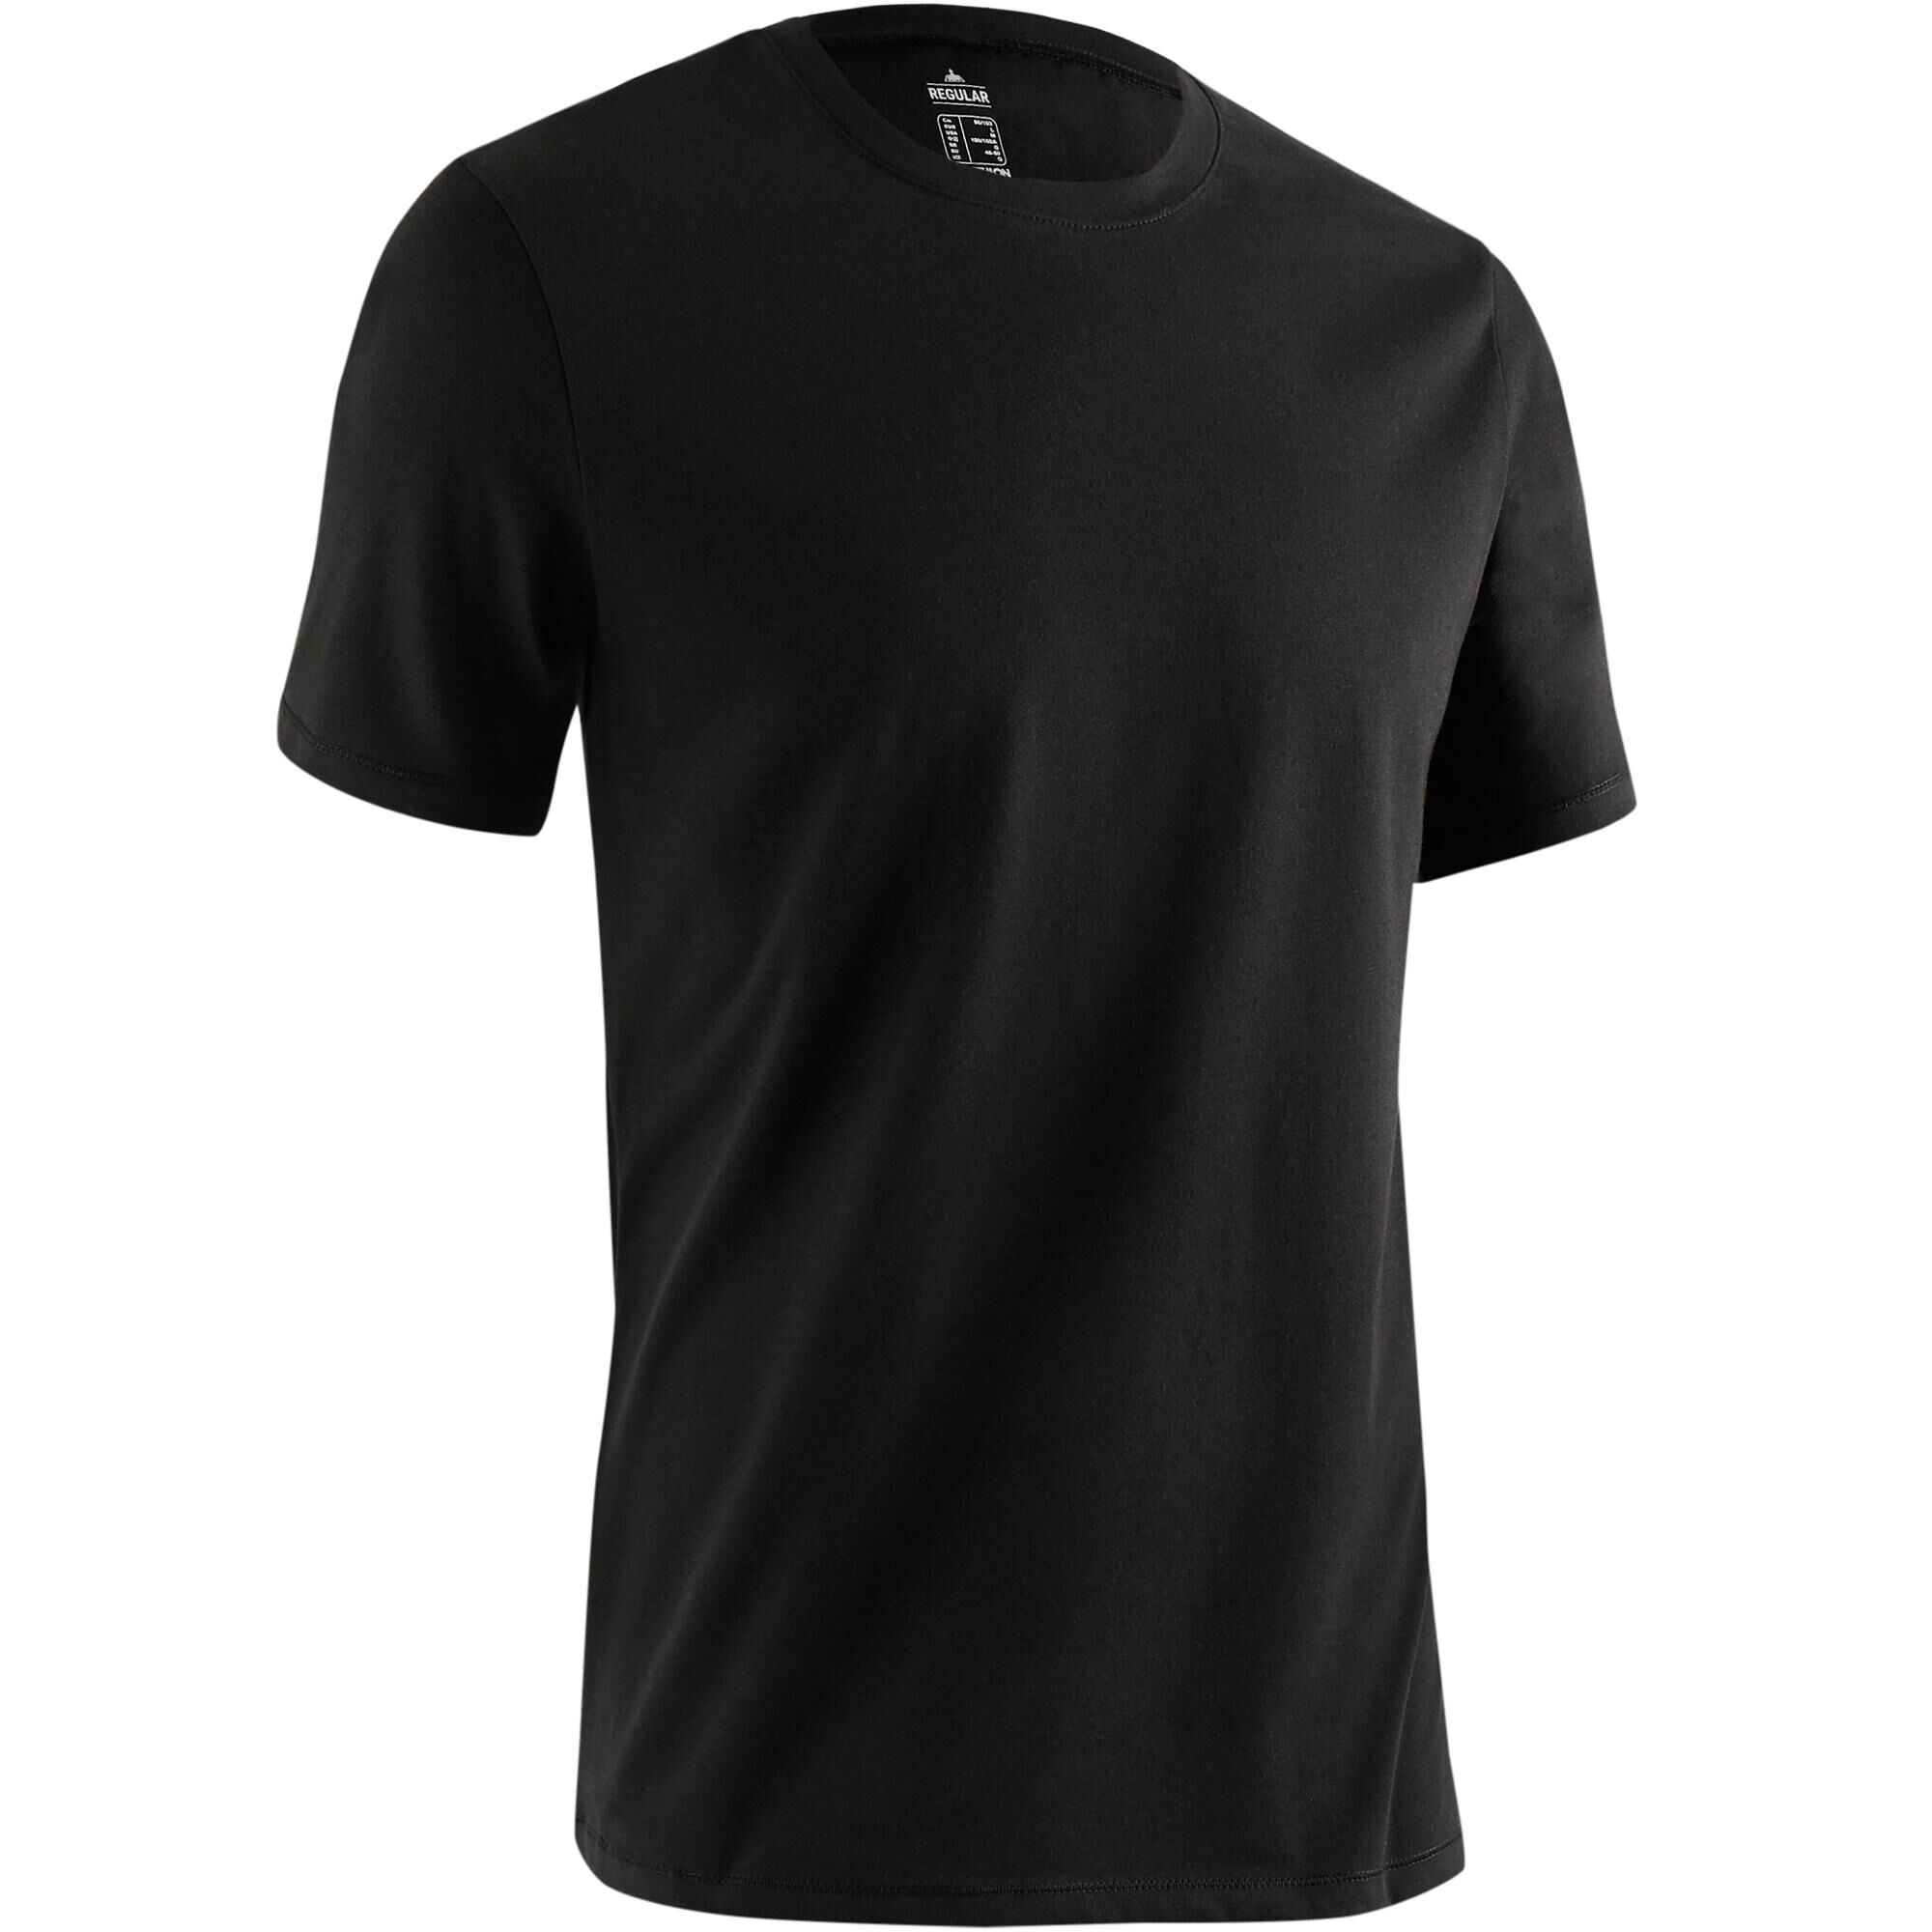 NYAMBA 500 Regular-Fit Pilates & Gentle Gym T-Shirt - Black